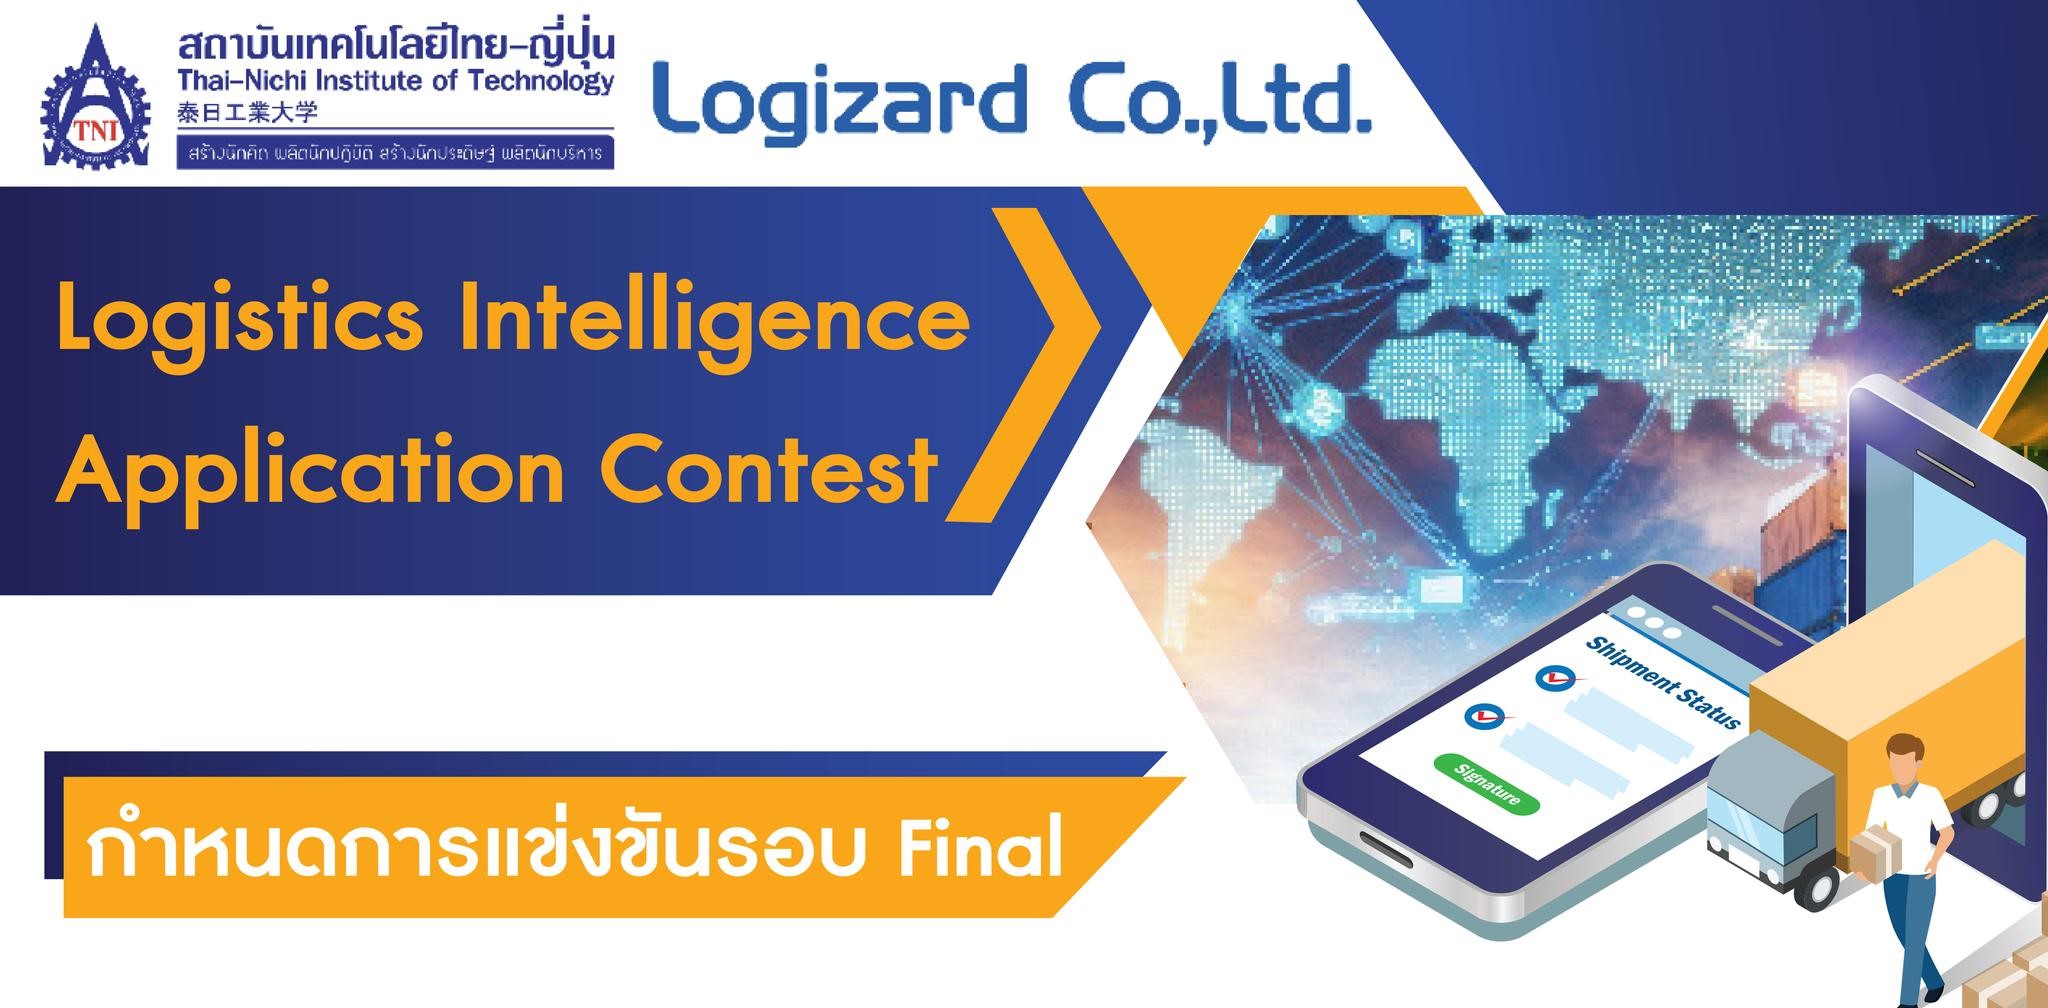 泰日工業大学 × ロジザード　タイにおいてロジスティクスに関するアプリ開発コンテスト開催のご報告